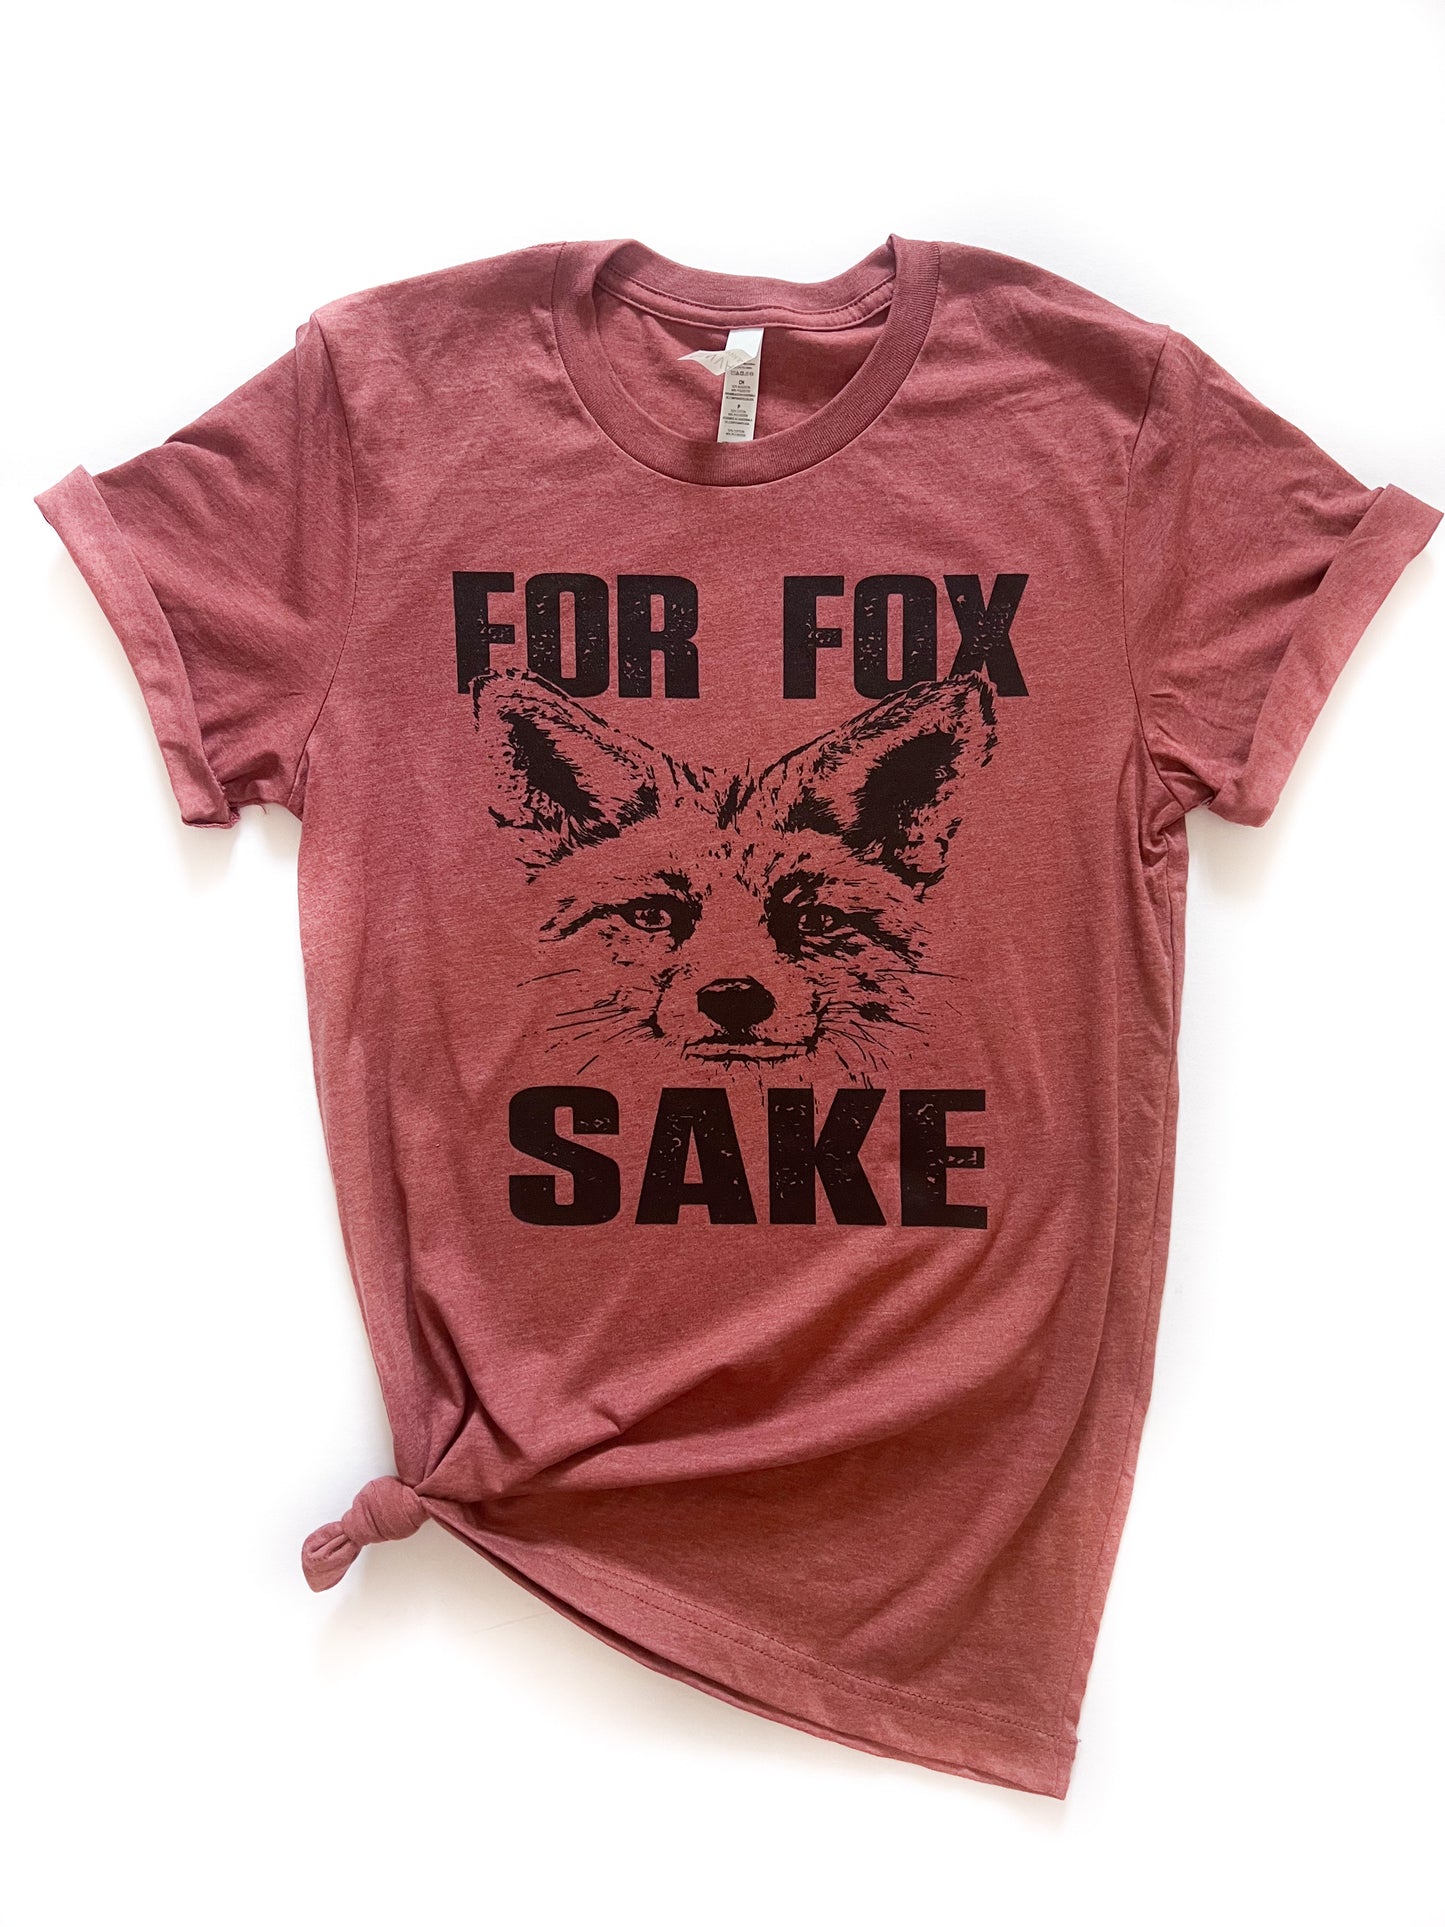 For Fox Sake Tee